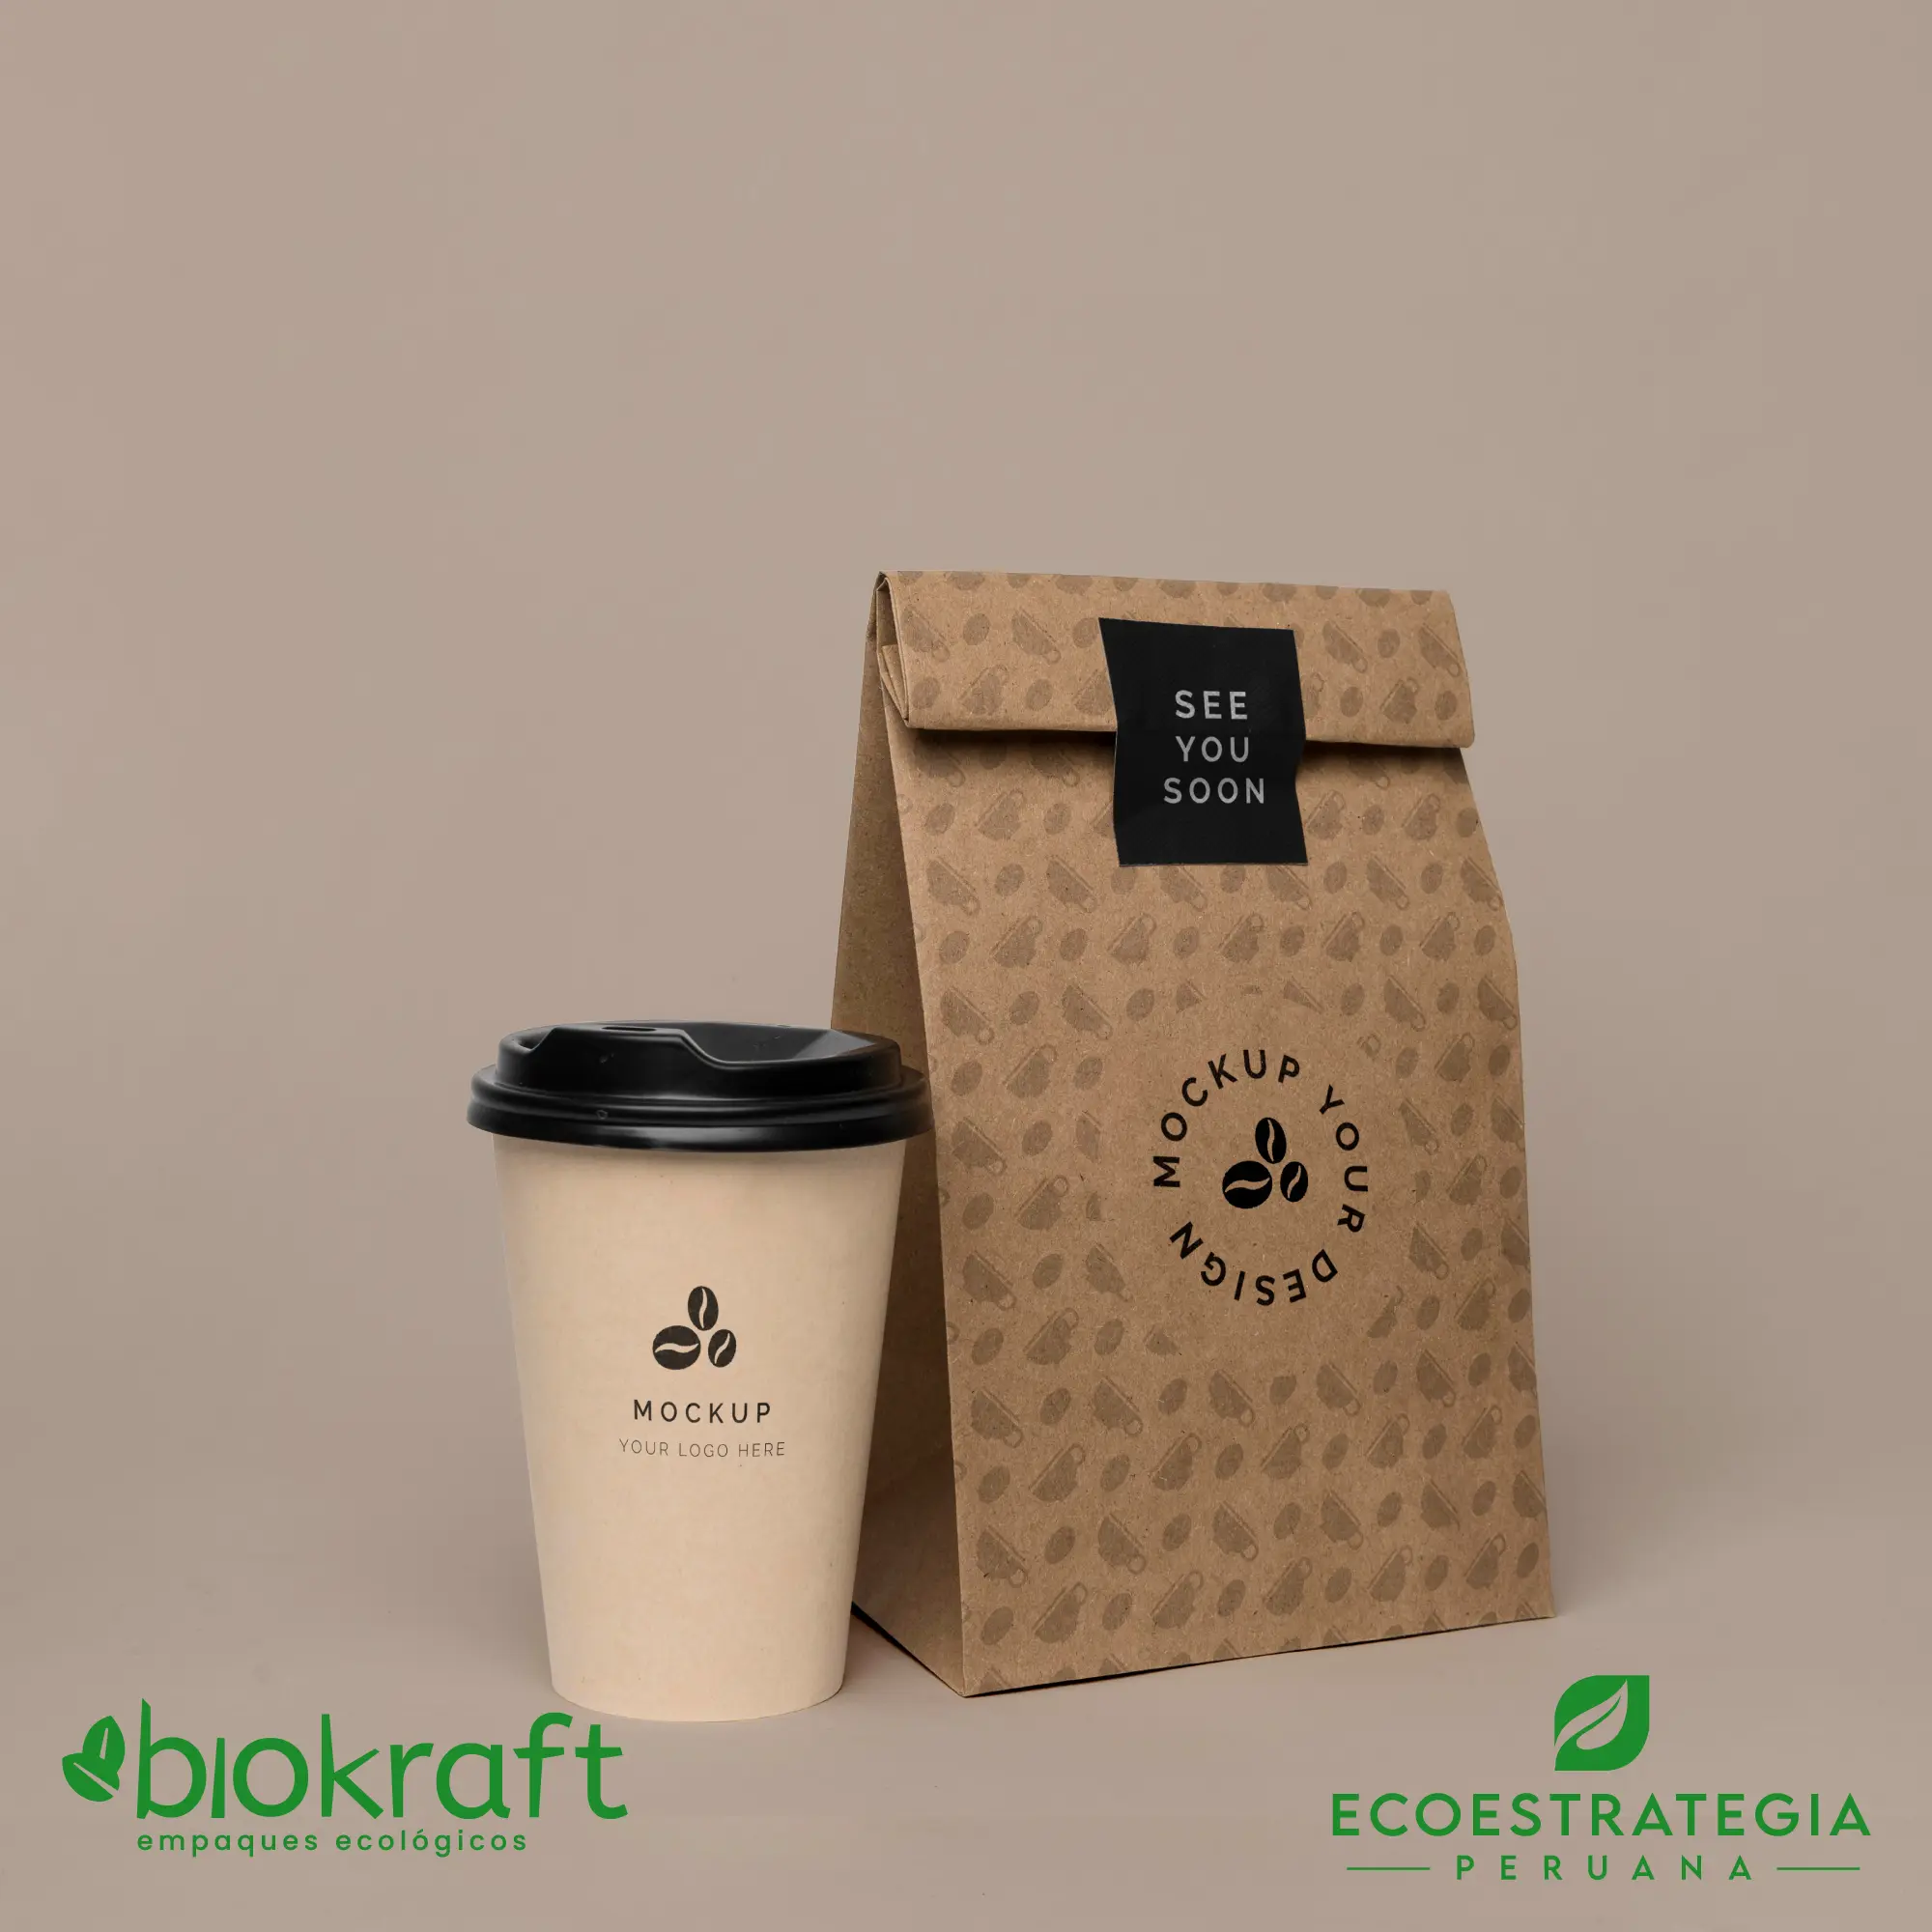 Esta bolsa de papel Kraft tiene un grosor de 60 gr y un peso de 17gr. Bolsa biodegradable de excelente gramaje y medida, ideal para comidas y productos ligeros. Cotiza ahora tus bolsas Kraft número 12